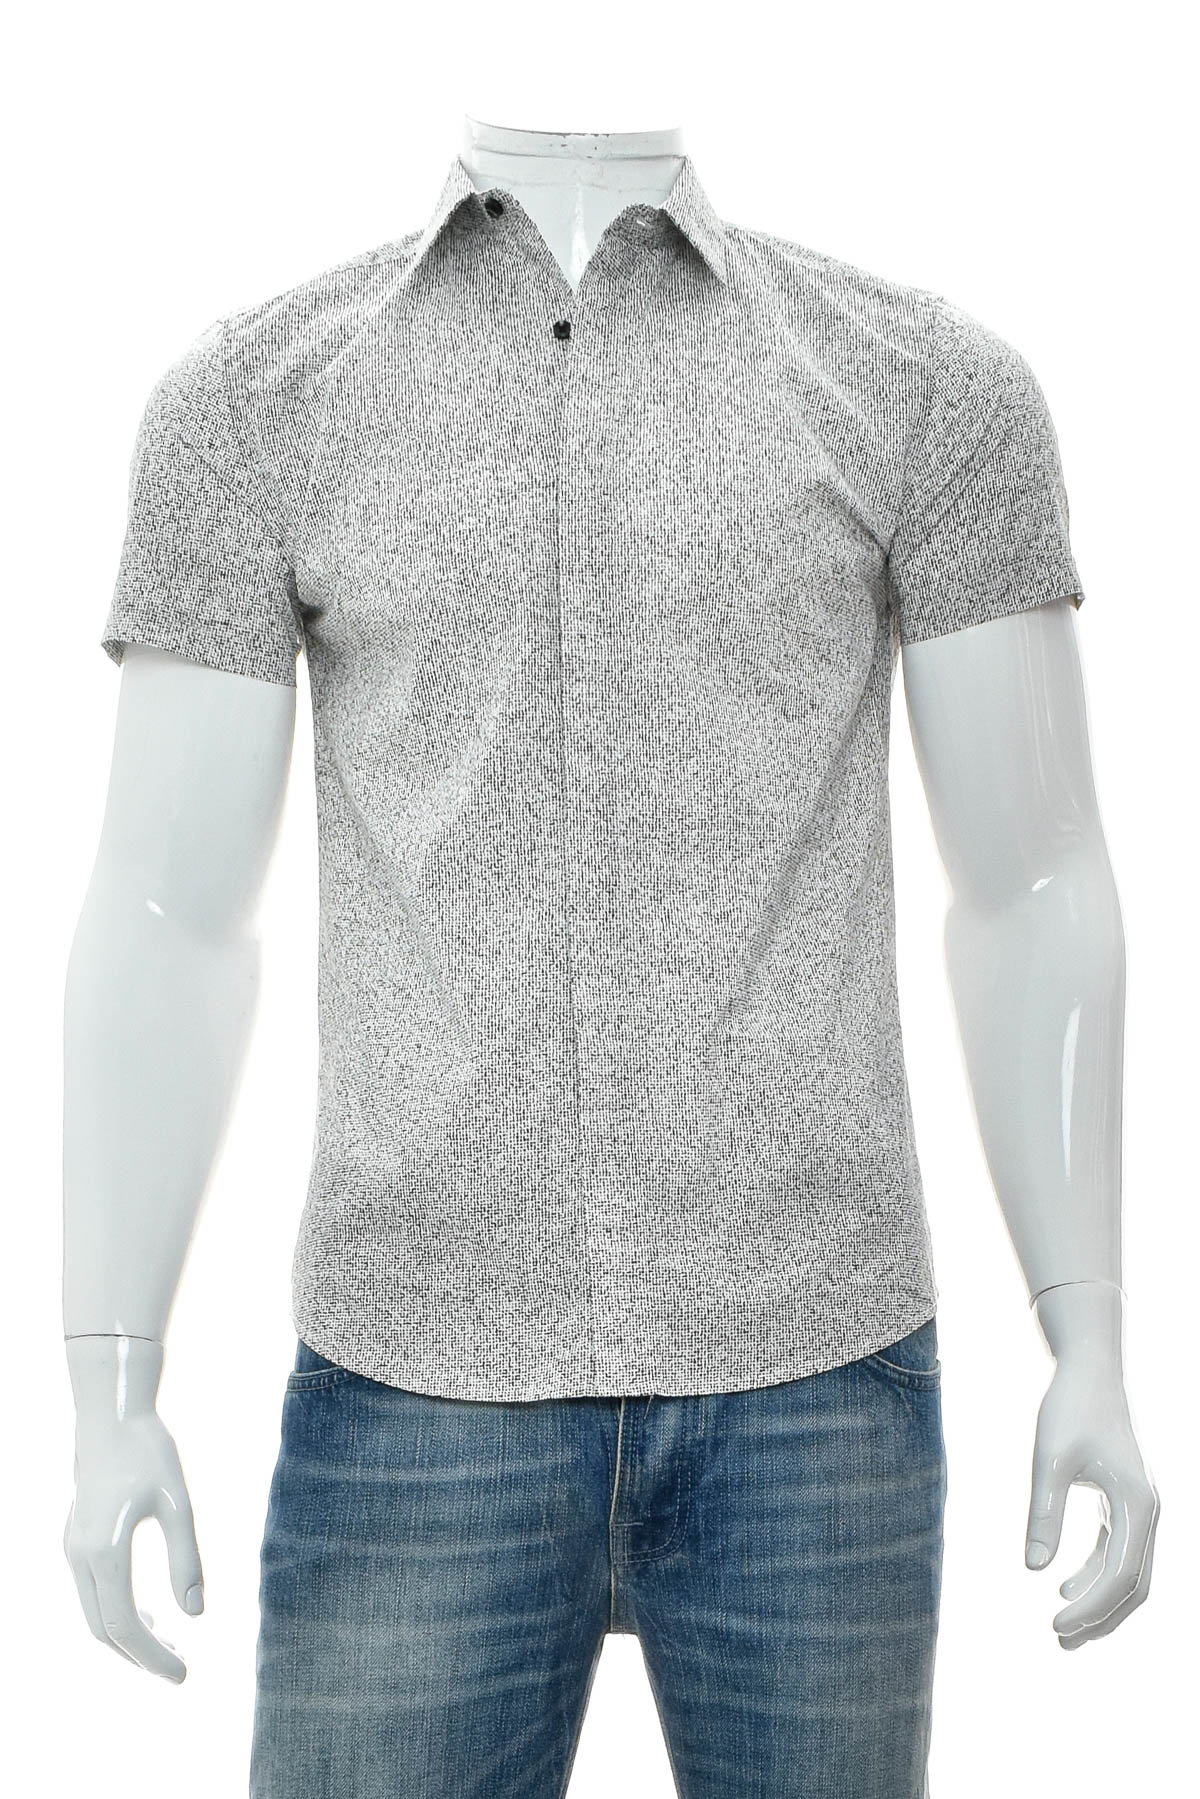 Ανδρικό πουκάμισο - Antony Morato - 0